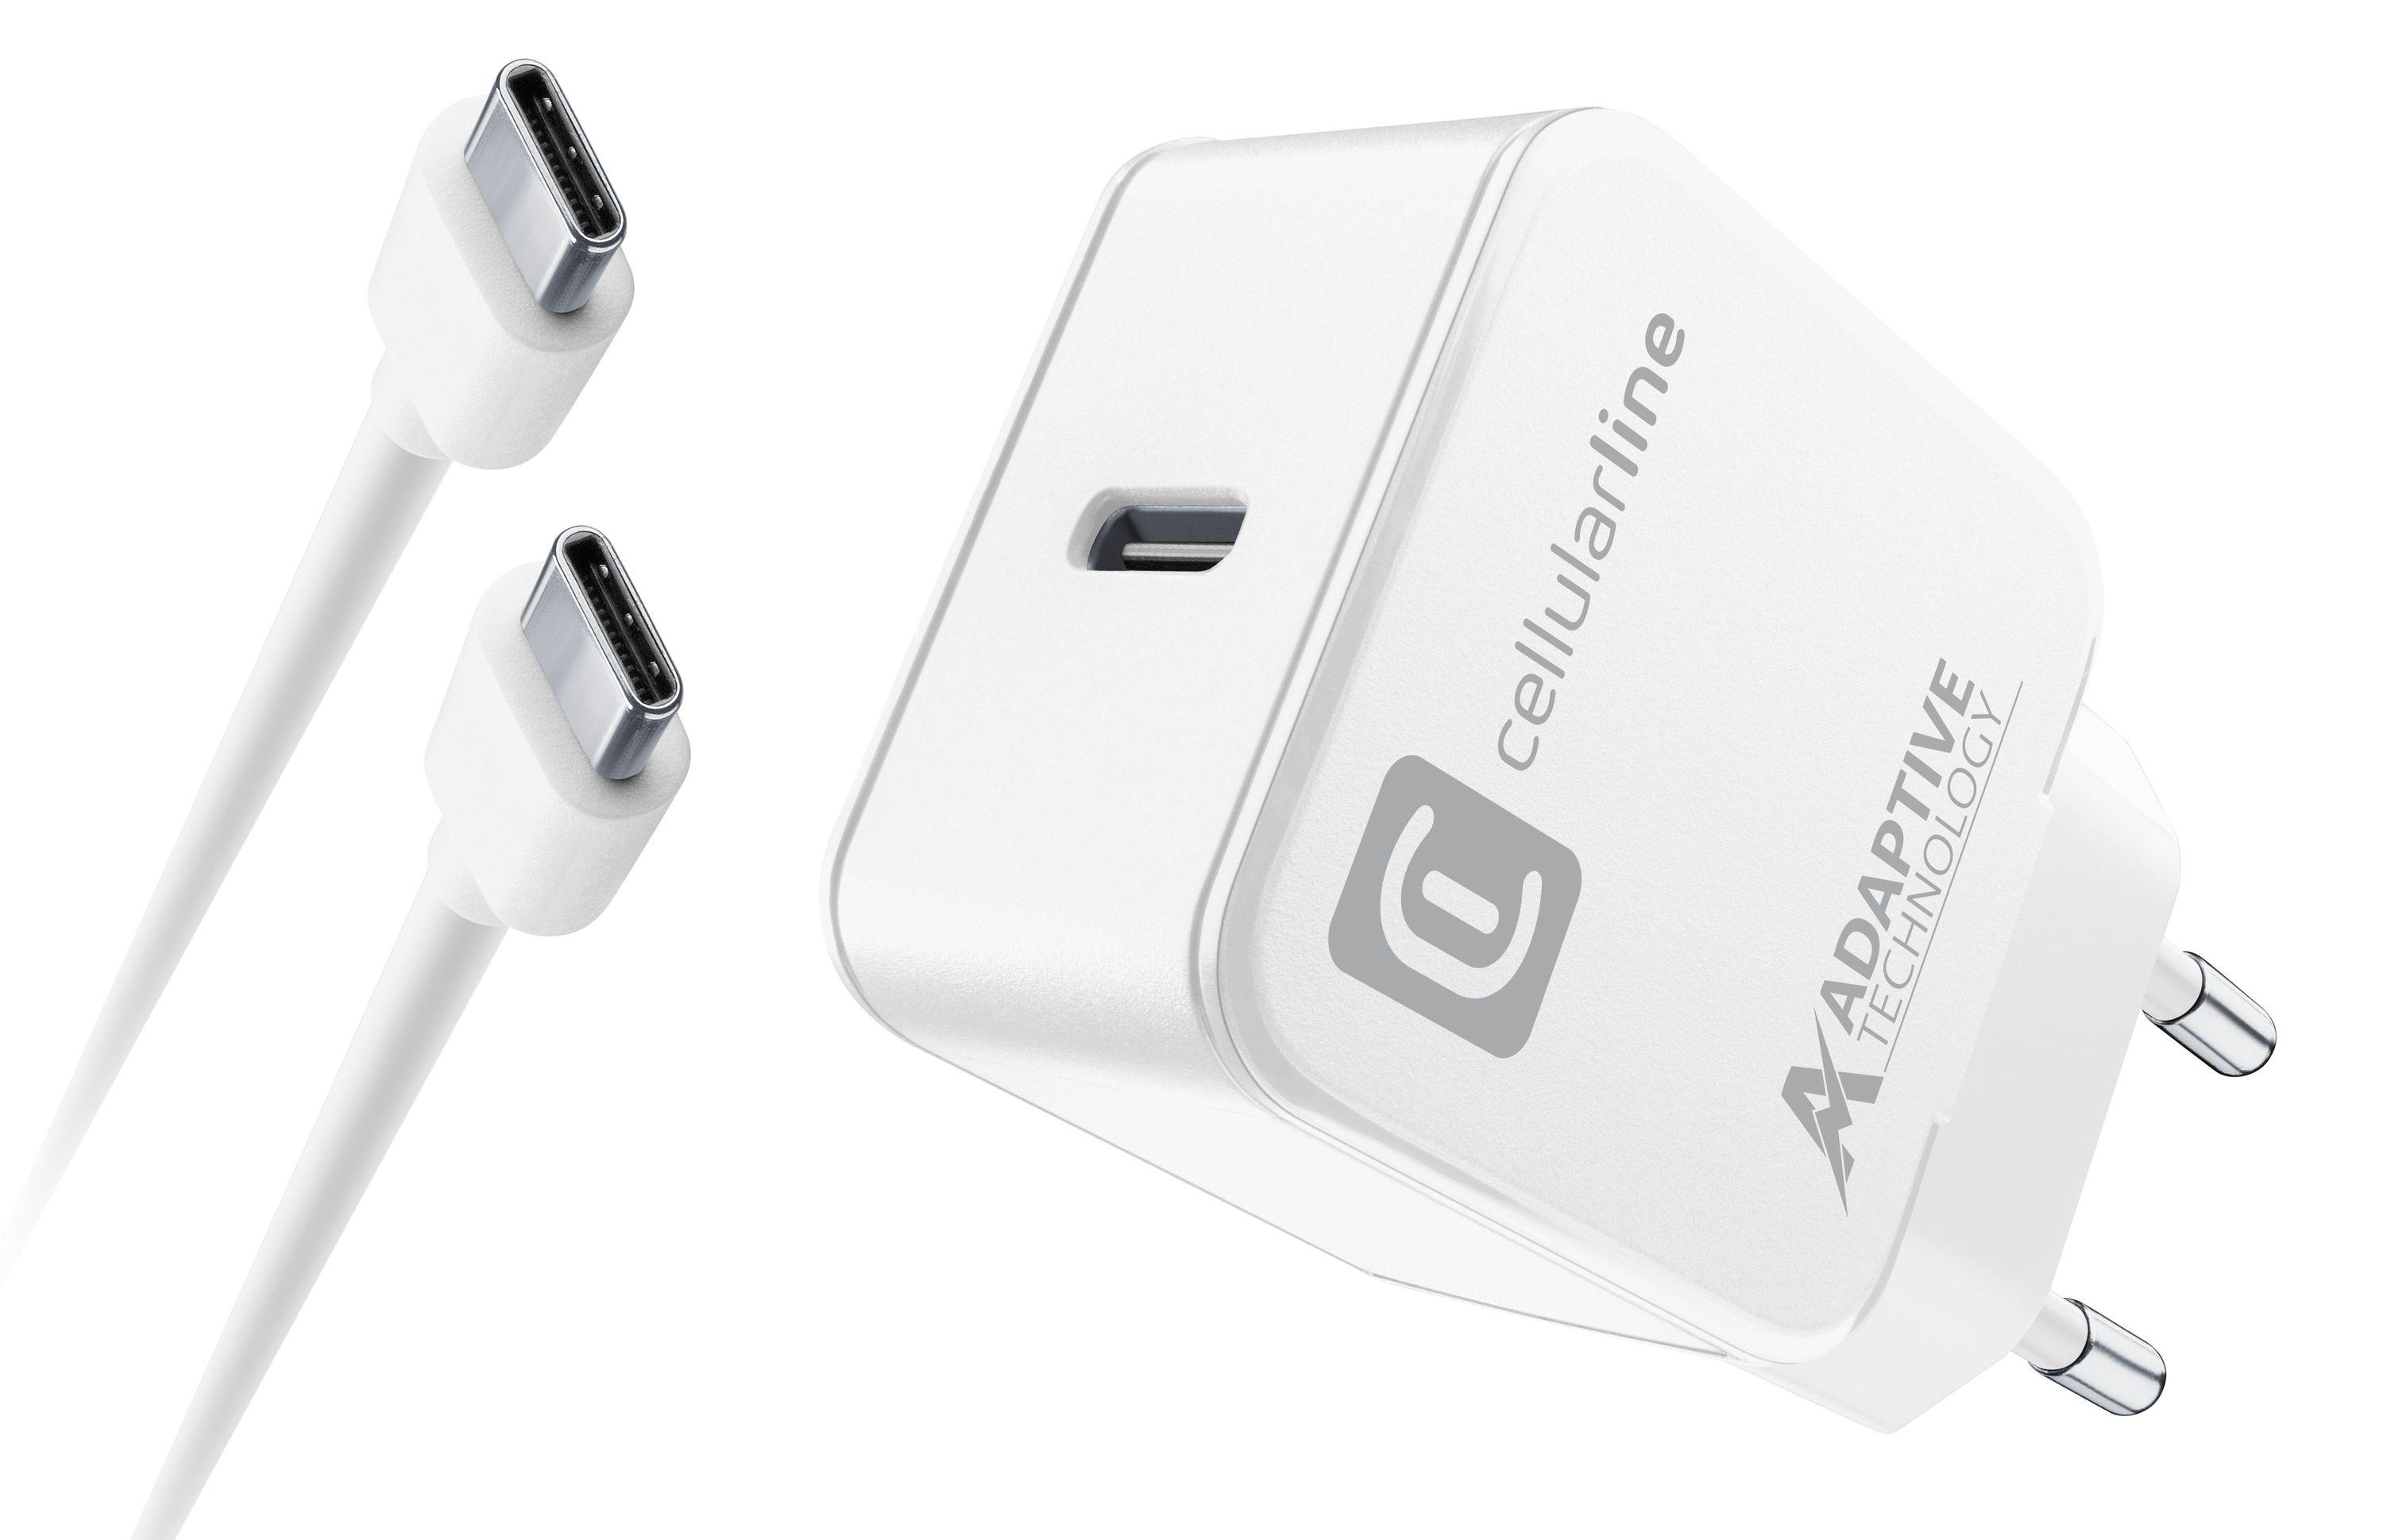 15 USB-C-Auflade-Kit LINE W, CELLULAR Weiß Ladegerät Samsung